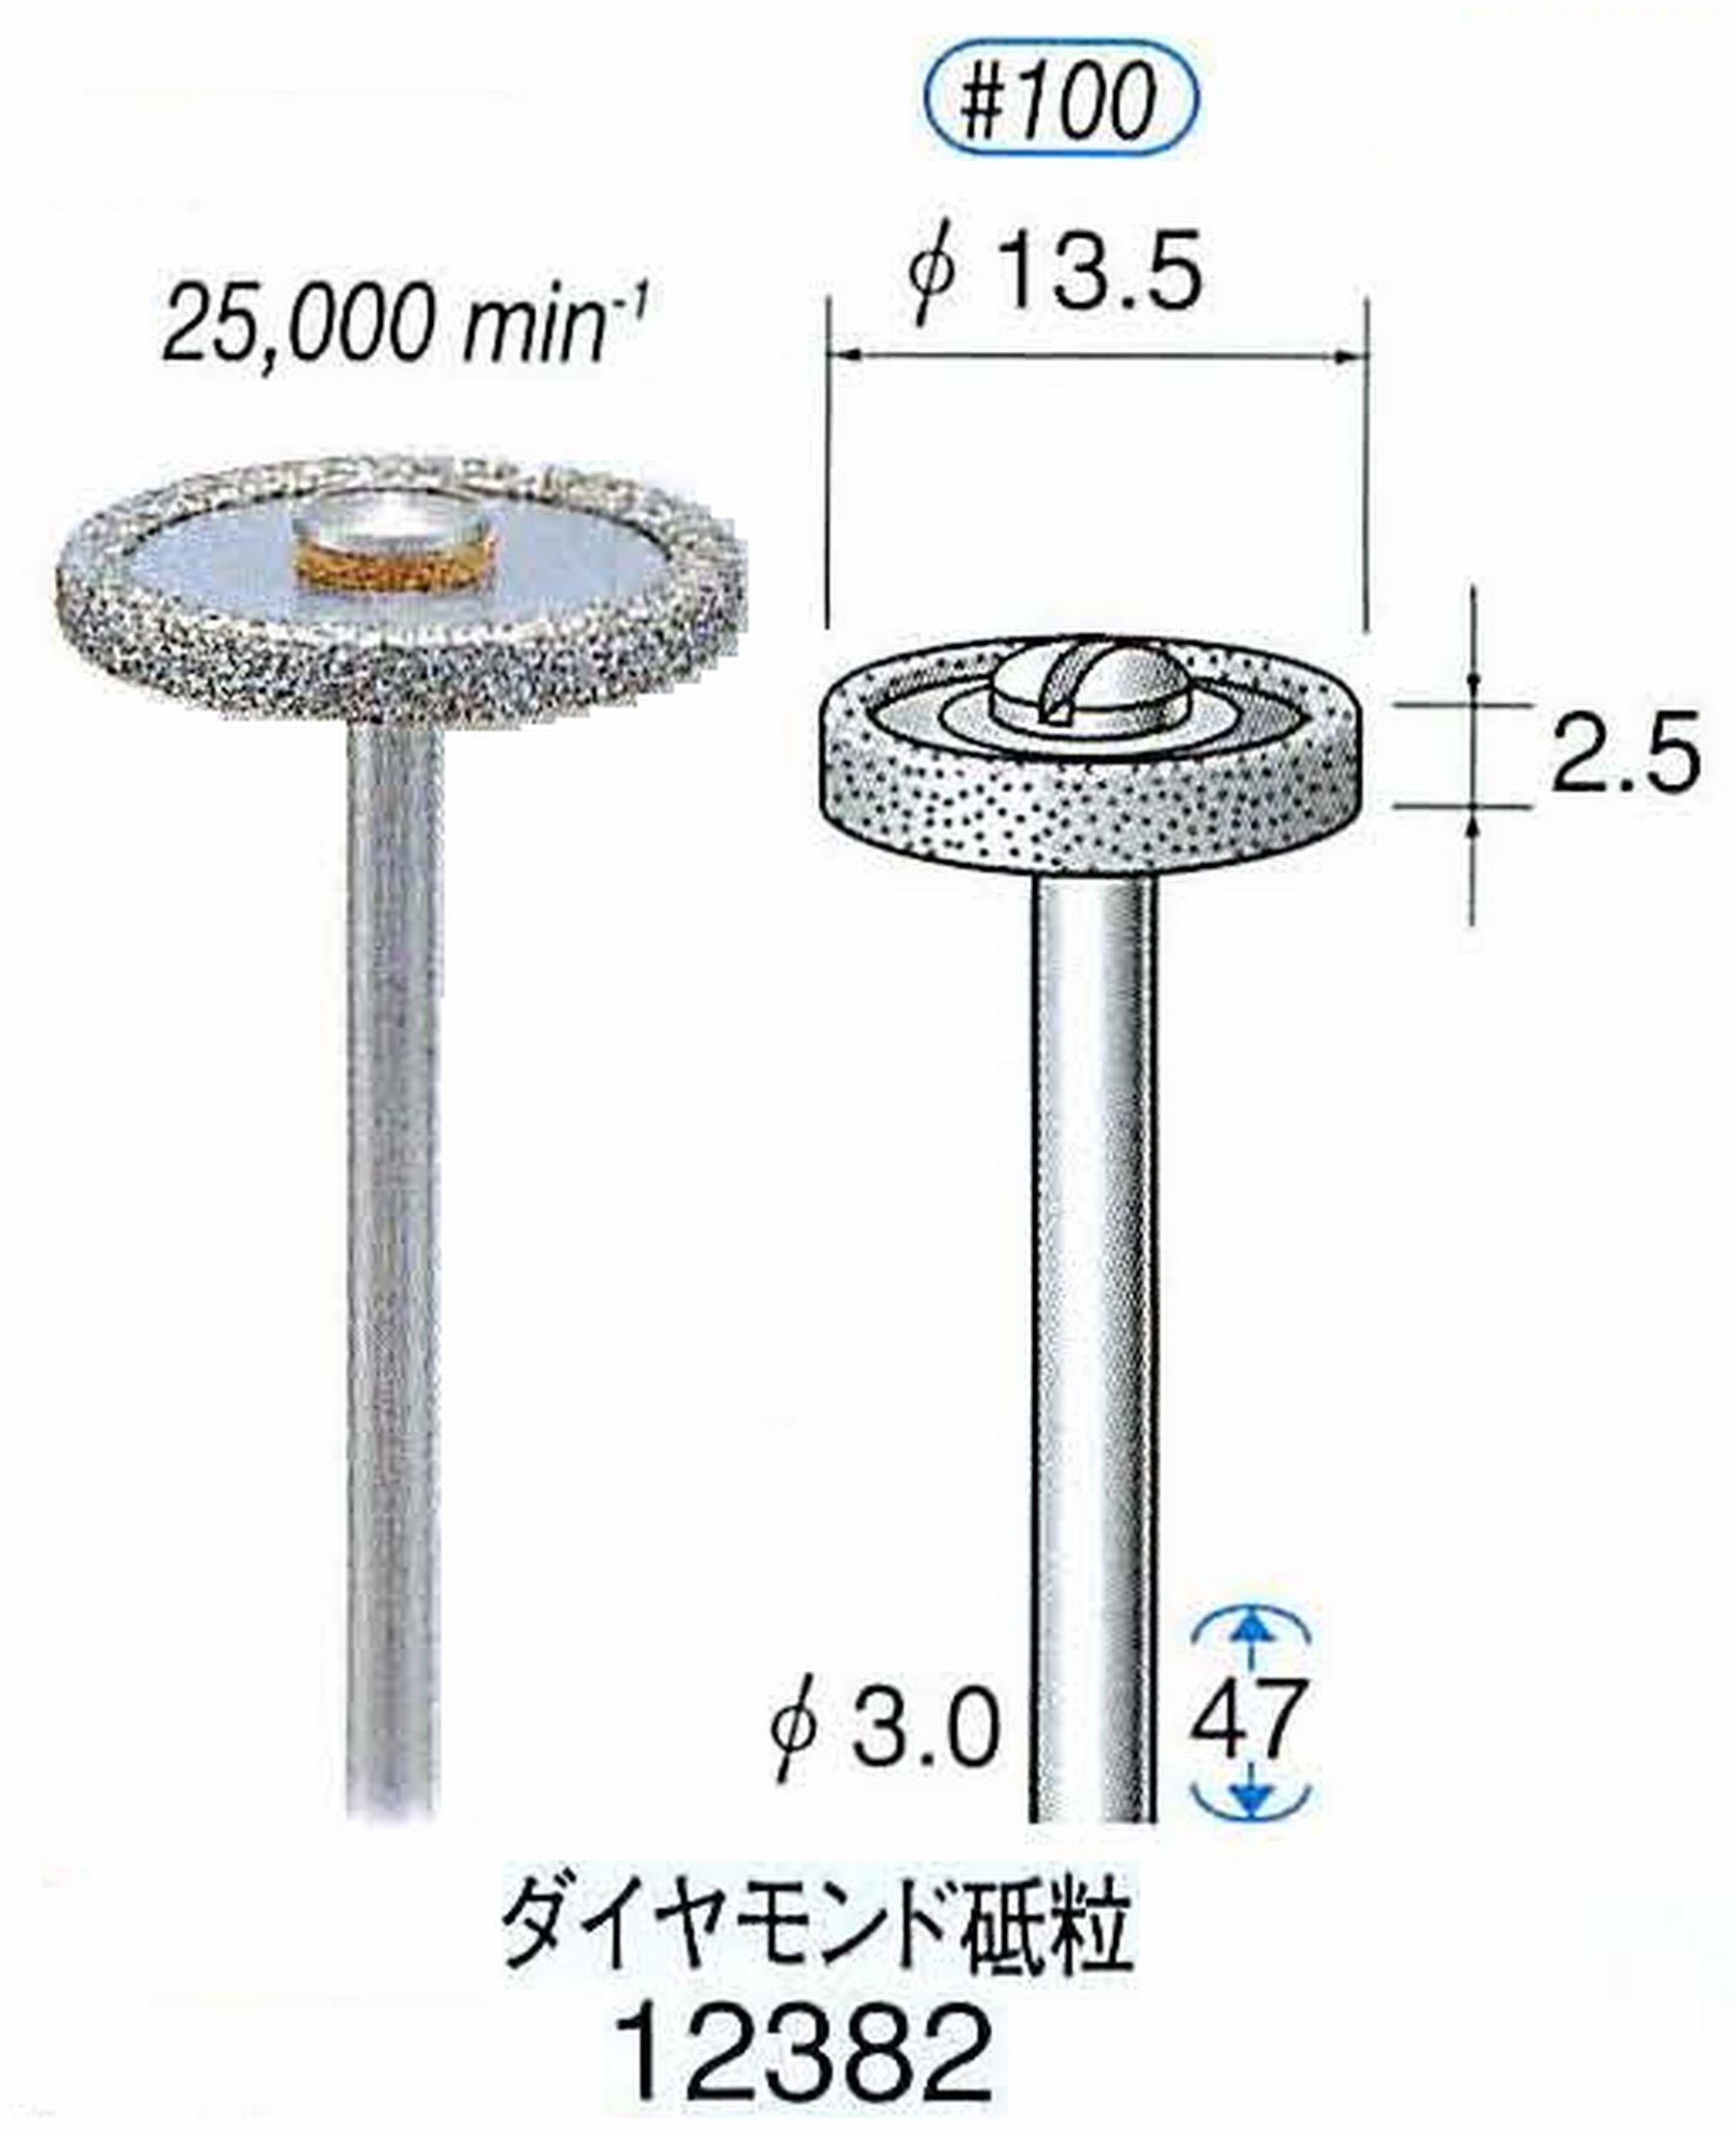 ナカニシ/NAKANISHI 電着ダイヤモンド ダイヤモンド砥粒 軸径(シャンク)φ3.0mm 12382